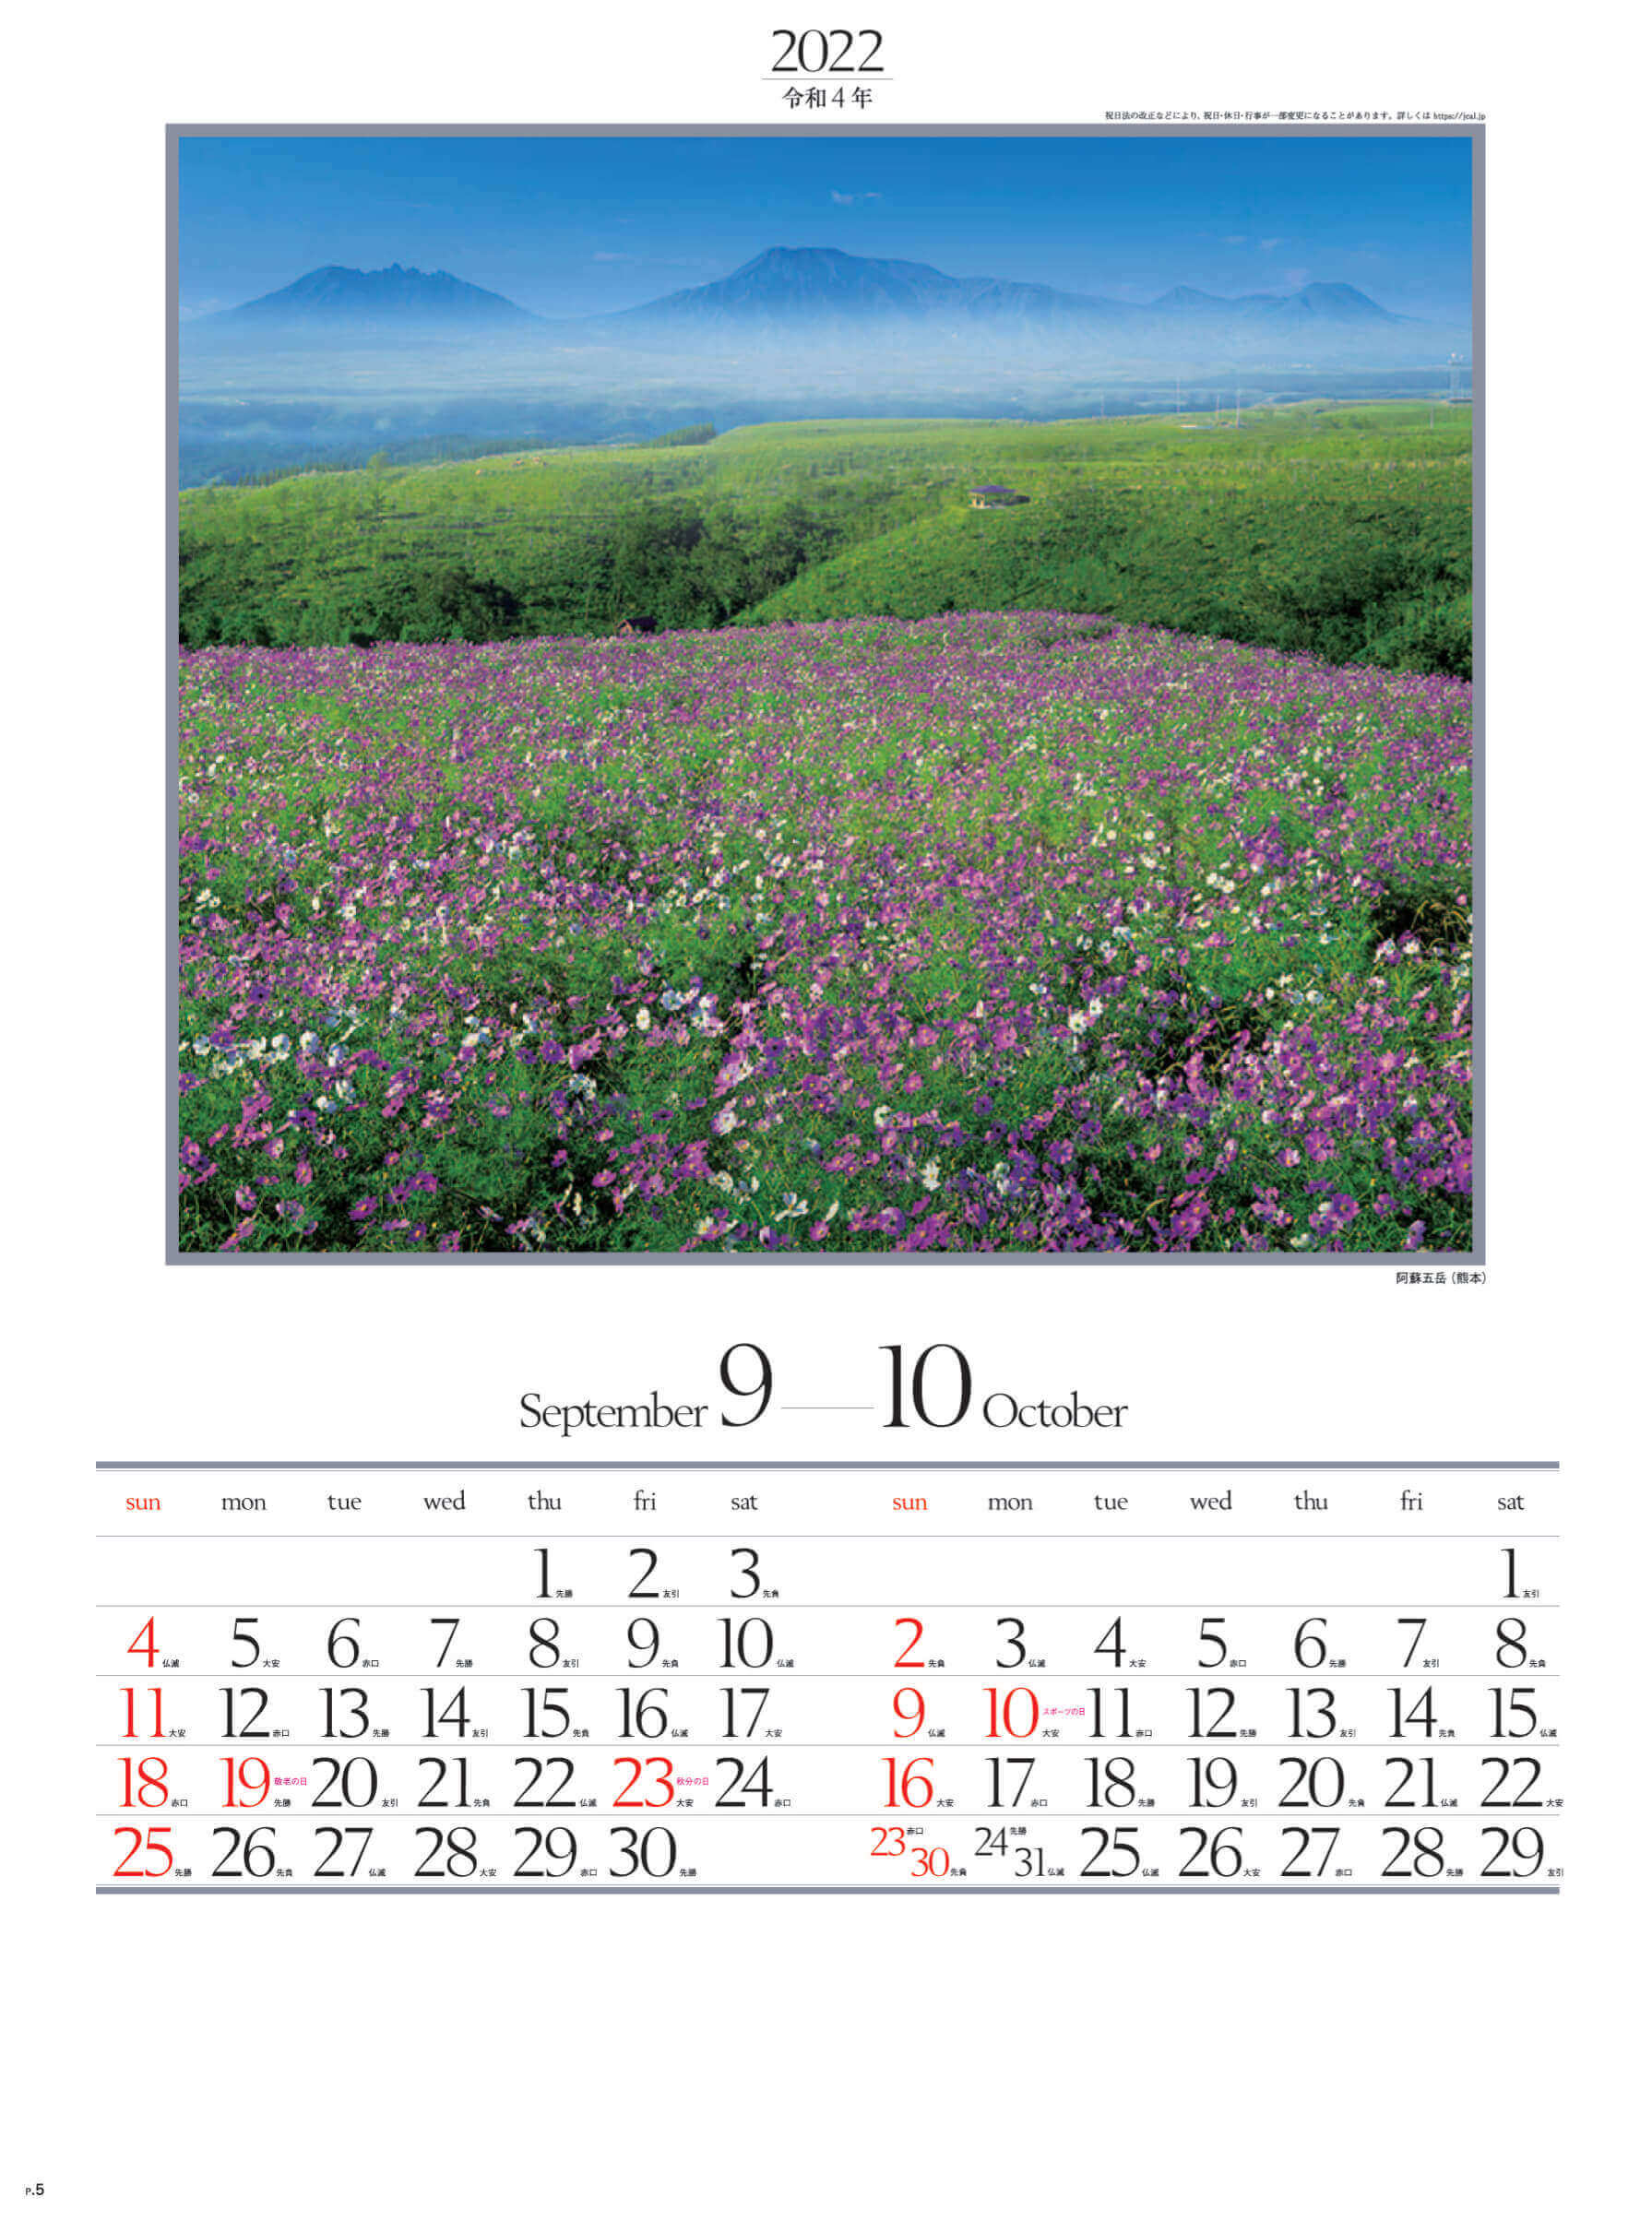 9-10月 阿蘇五岳(熊本) 四季六彩 2022年カレンダーの画像